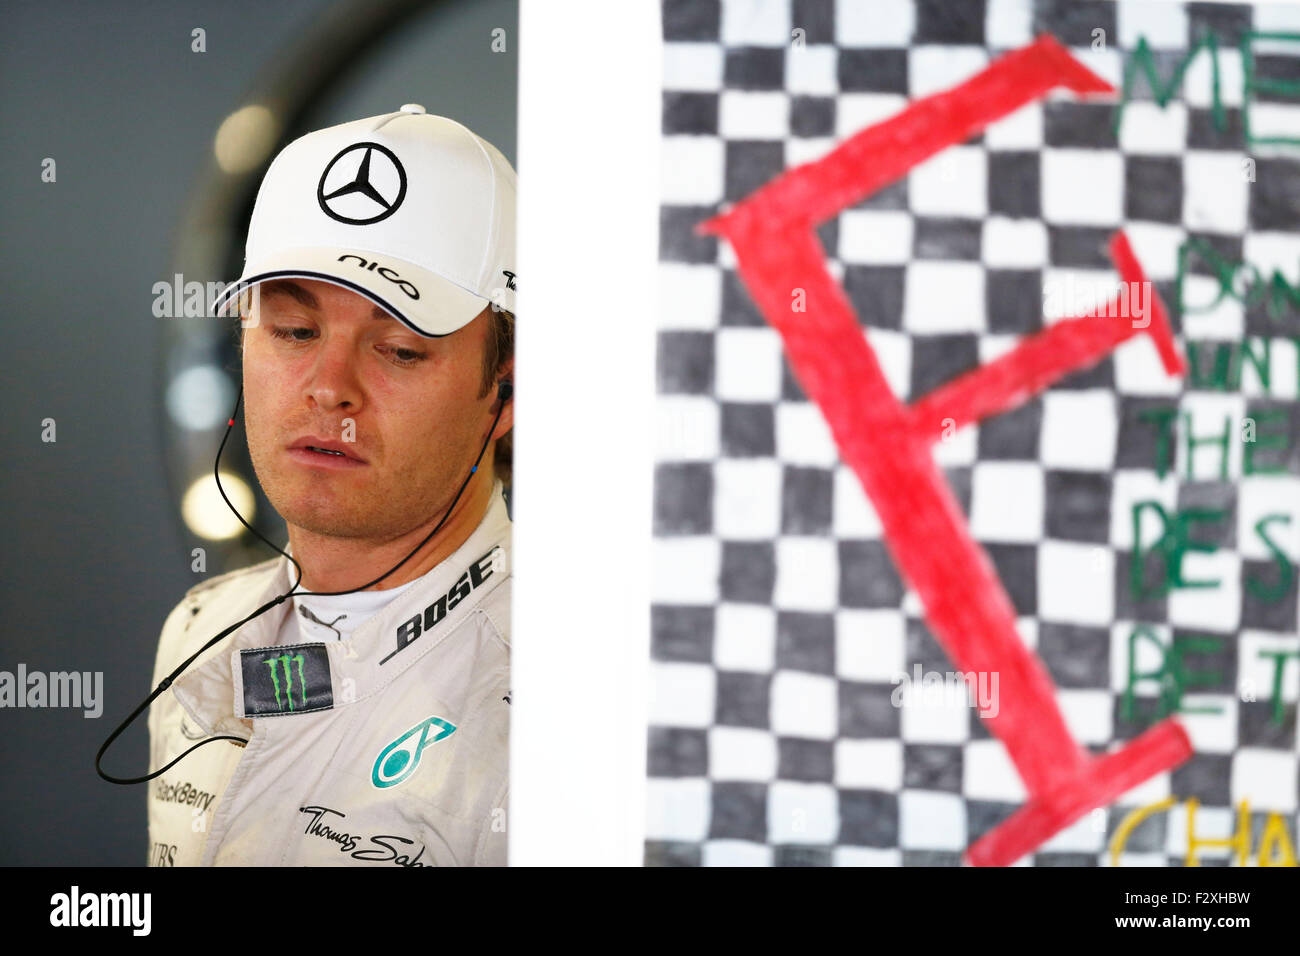 Automovilismo: Campeonato del Mundo de Fórmula Uno FIA 2015, Gran Premio de Japón, #6 Nico Rosberg (GER, Mercedes AMG Petronas Formula One Team), Foto de stock